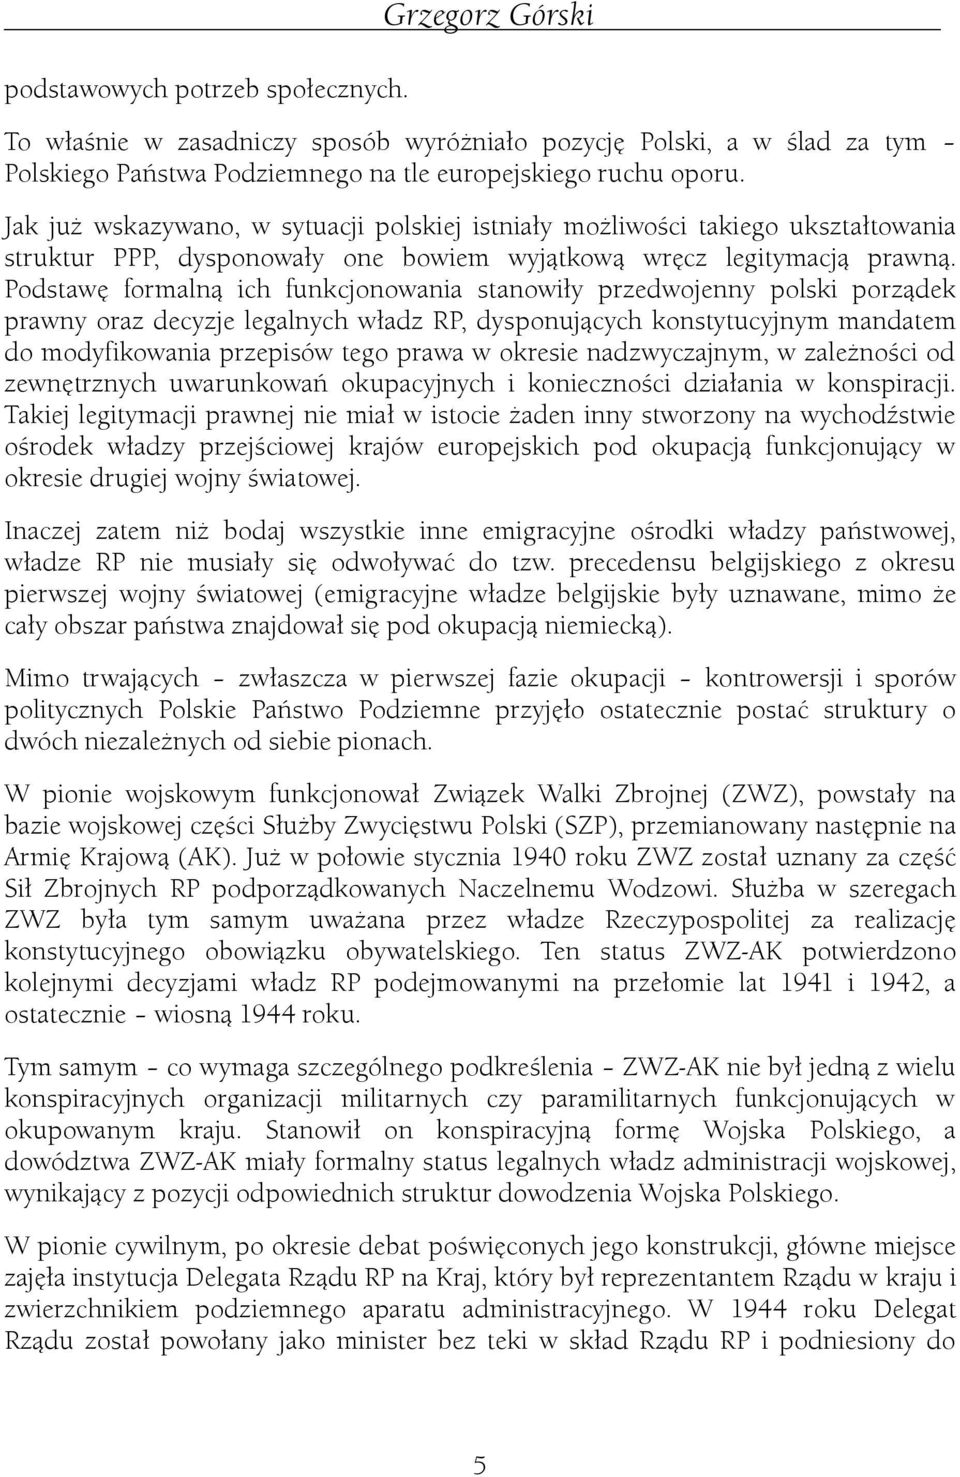 Podstawę formalną ch funkcjonowana stanowły przedwojenny polsk porządek prawny oraz decyzje legalnych władz RP, dysponujących konstytucyjnym mandatem do modyfkowana przepsów tego prawa w okrese